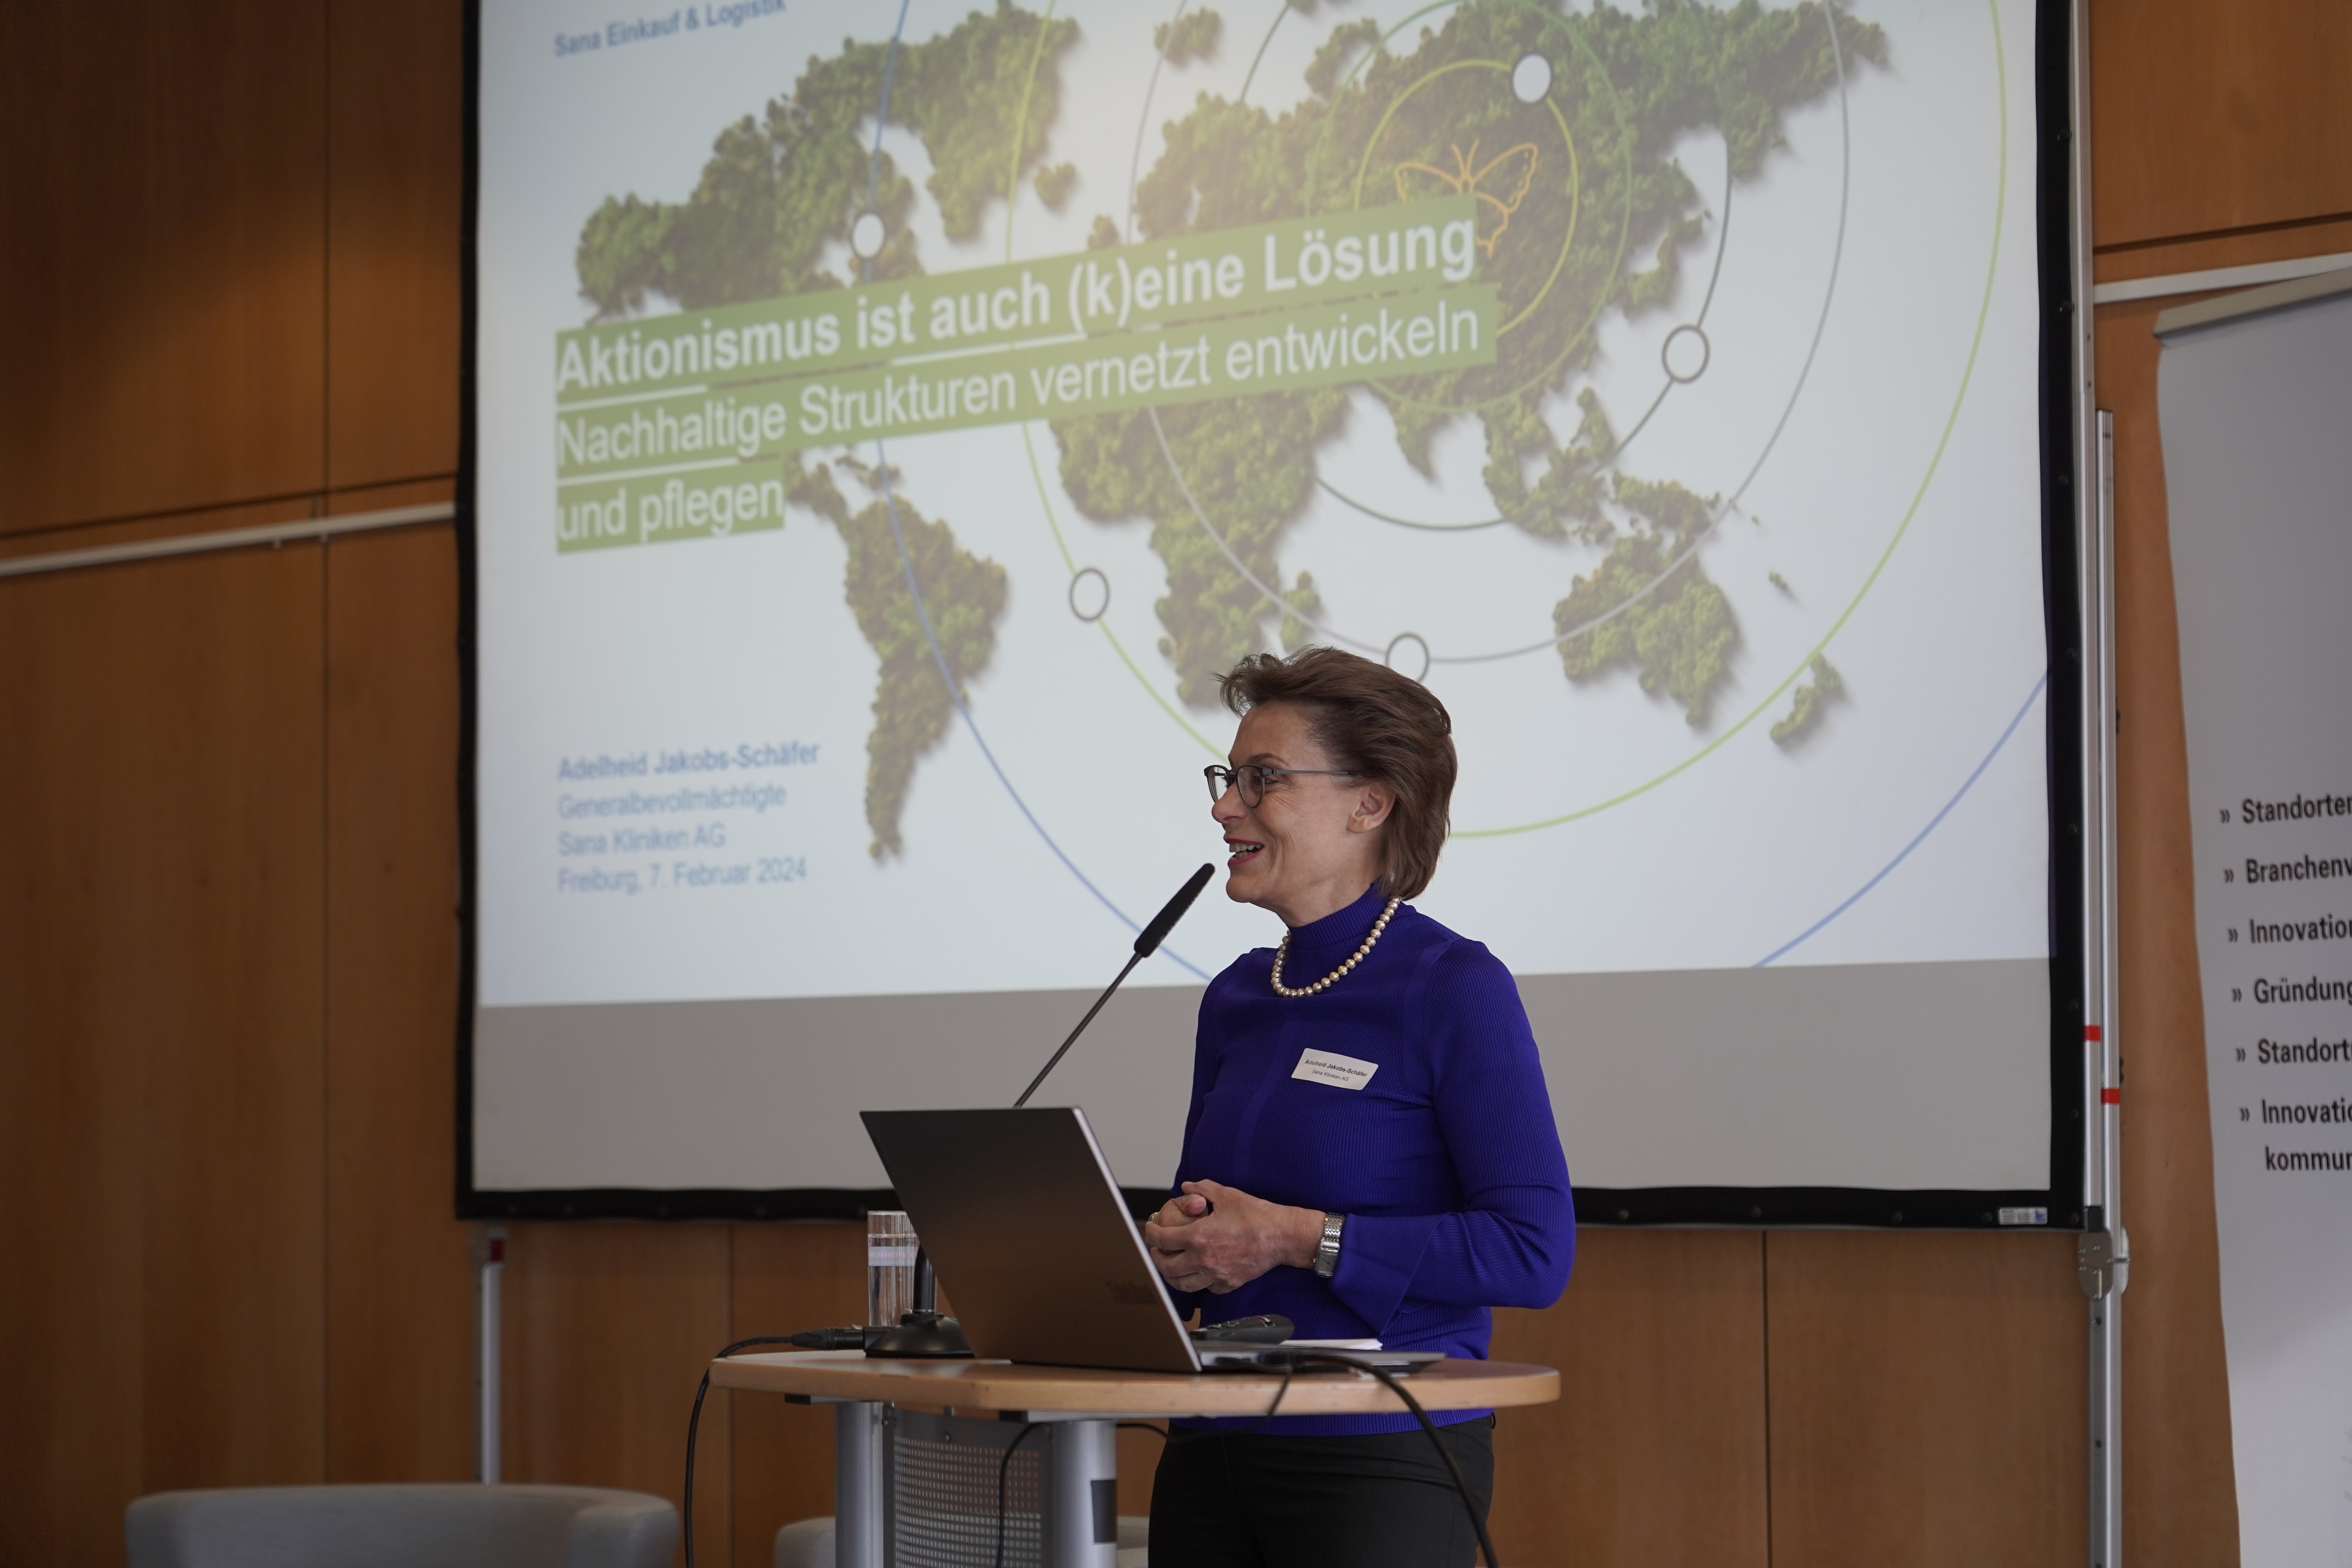 Keynote-Sprecherin Adelheid Jakobs-Schäfer steht am Rednerpult, hinter ihr ist die Präsentationsfolien mit dem Titel der Keynote zu sehen: 